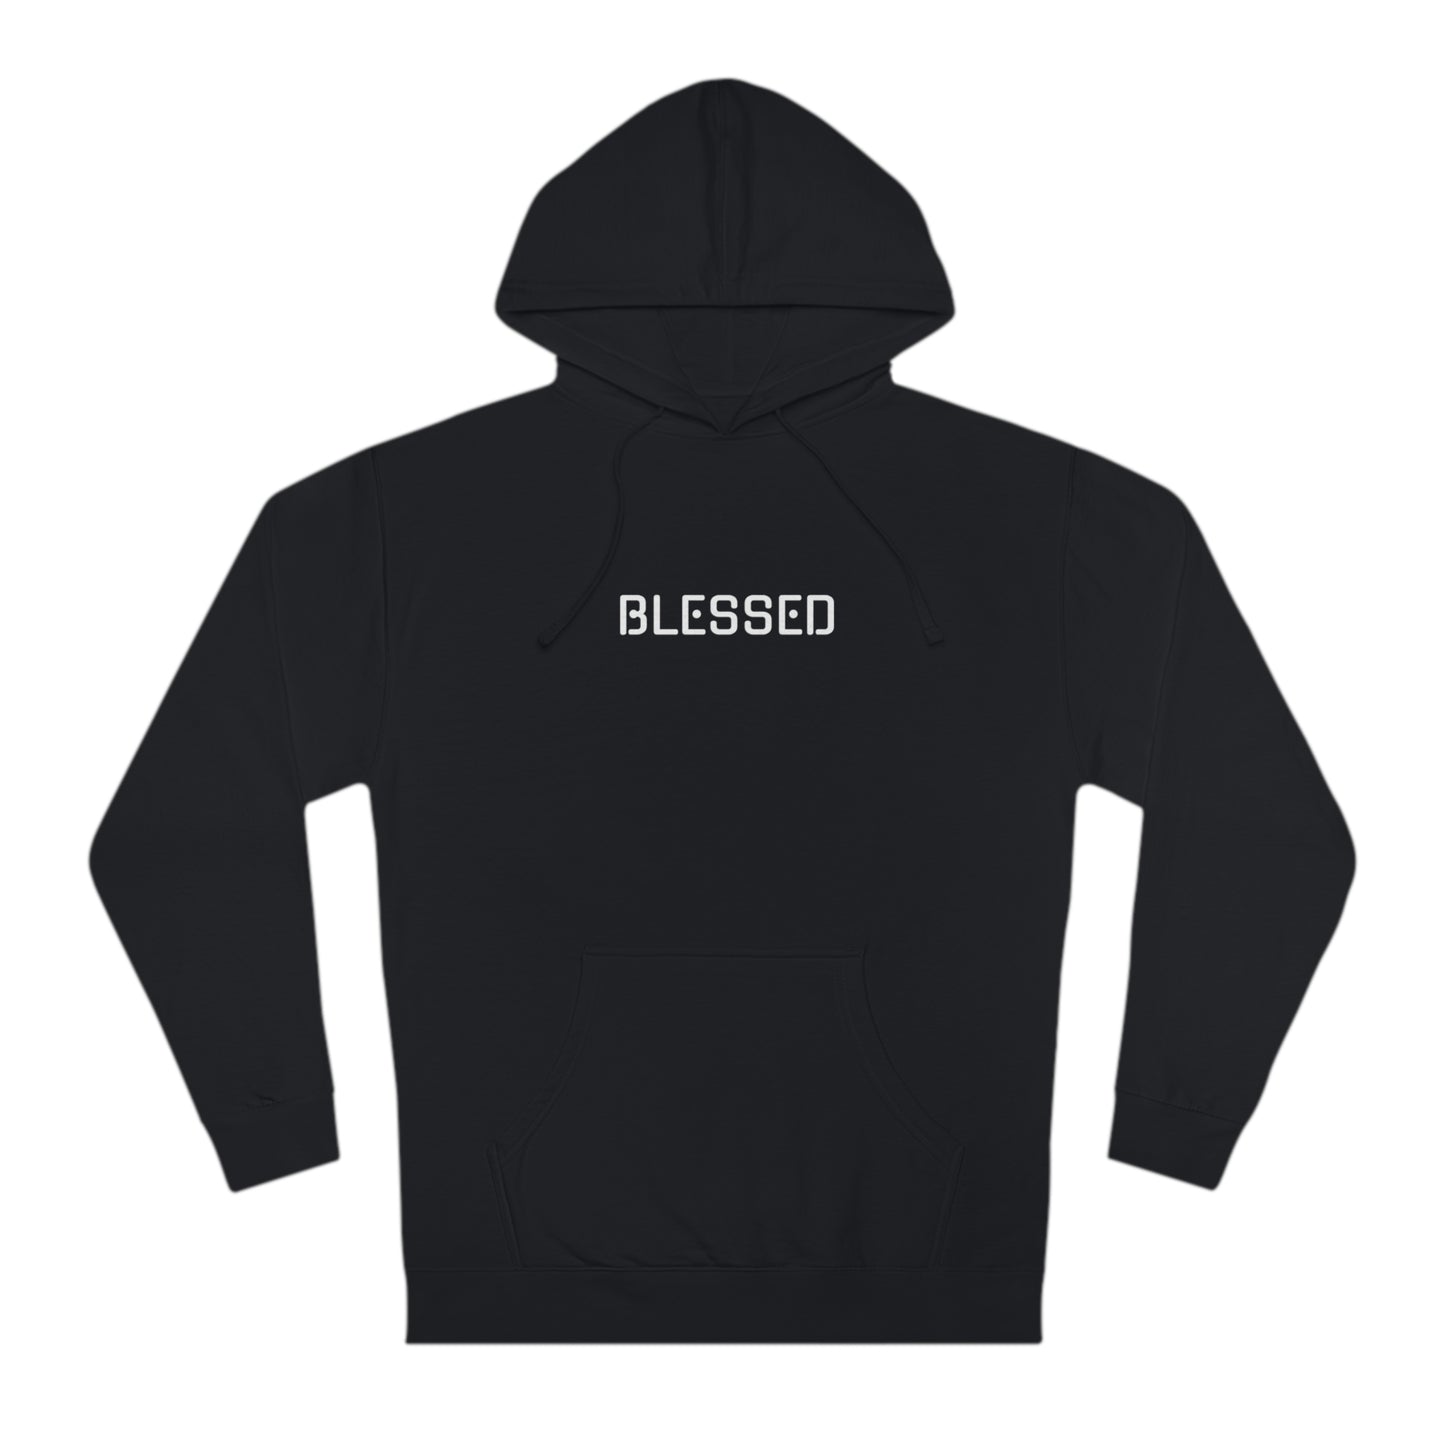 BLESSED -Unisex Hooded Sweatshirt